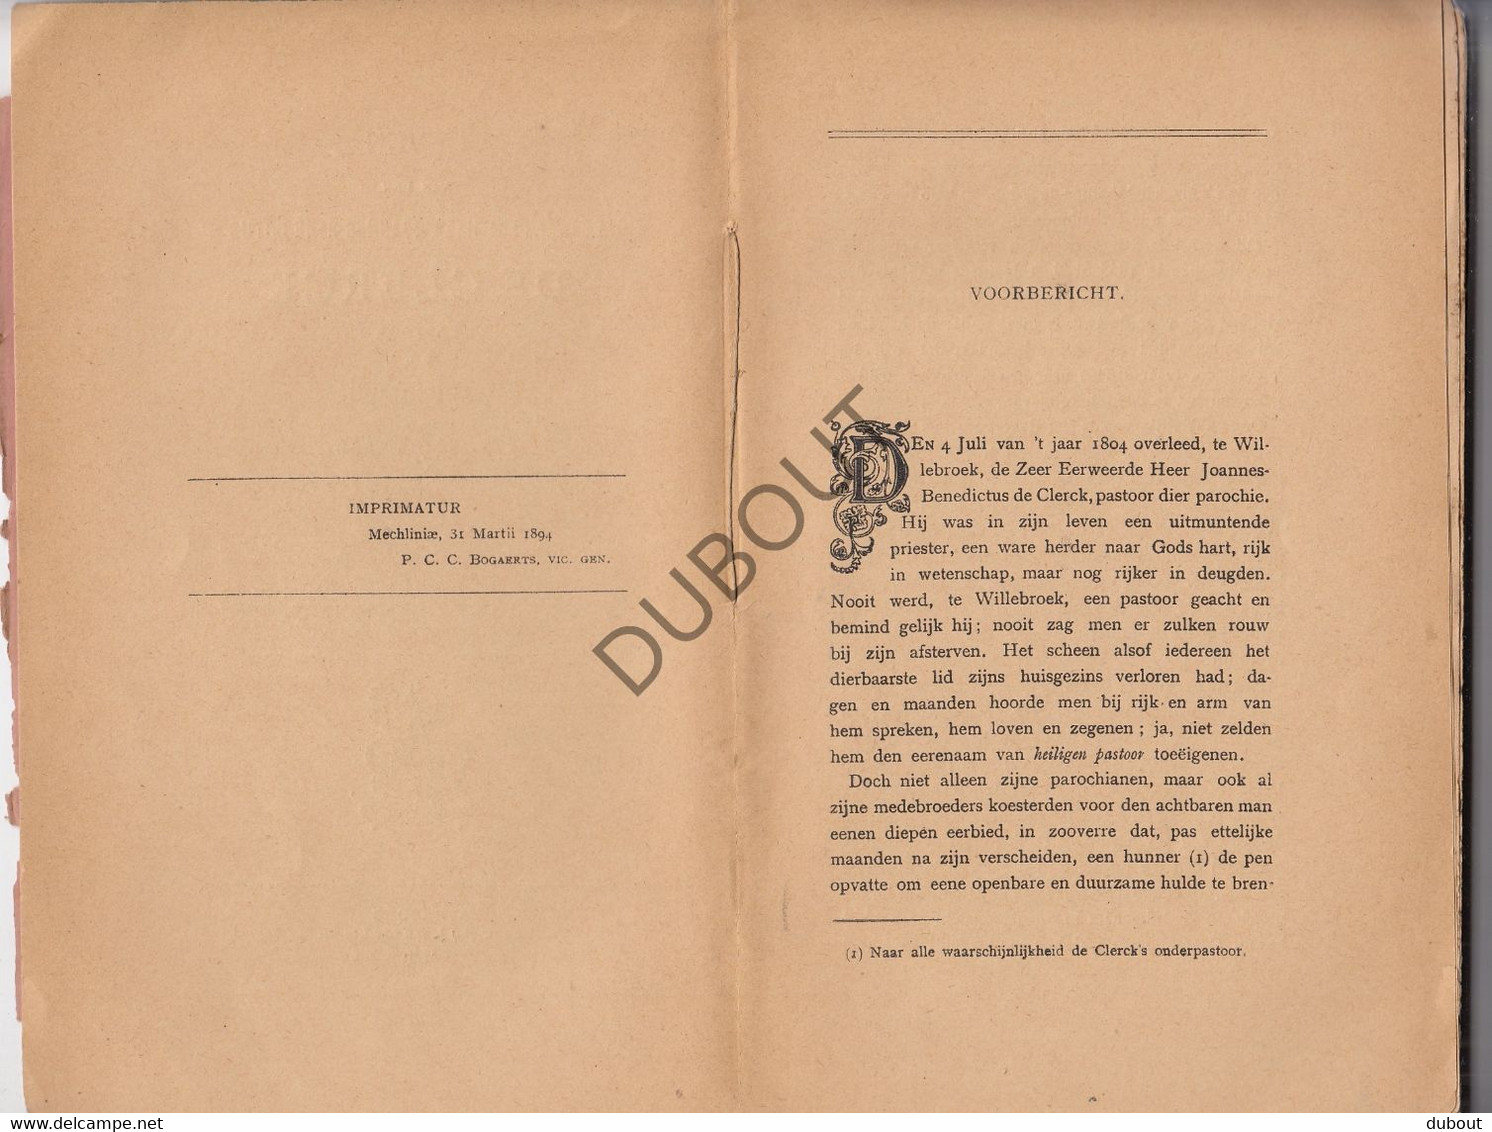 WILLEBROEK - Leven Van Eerwaarde Heer J-B De Clerck - A.M.J. Van Meel, Pastoor Van Diest - 1894    (V1200) - Antique